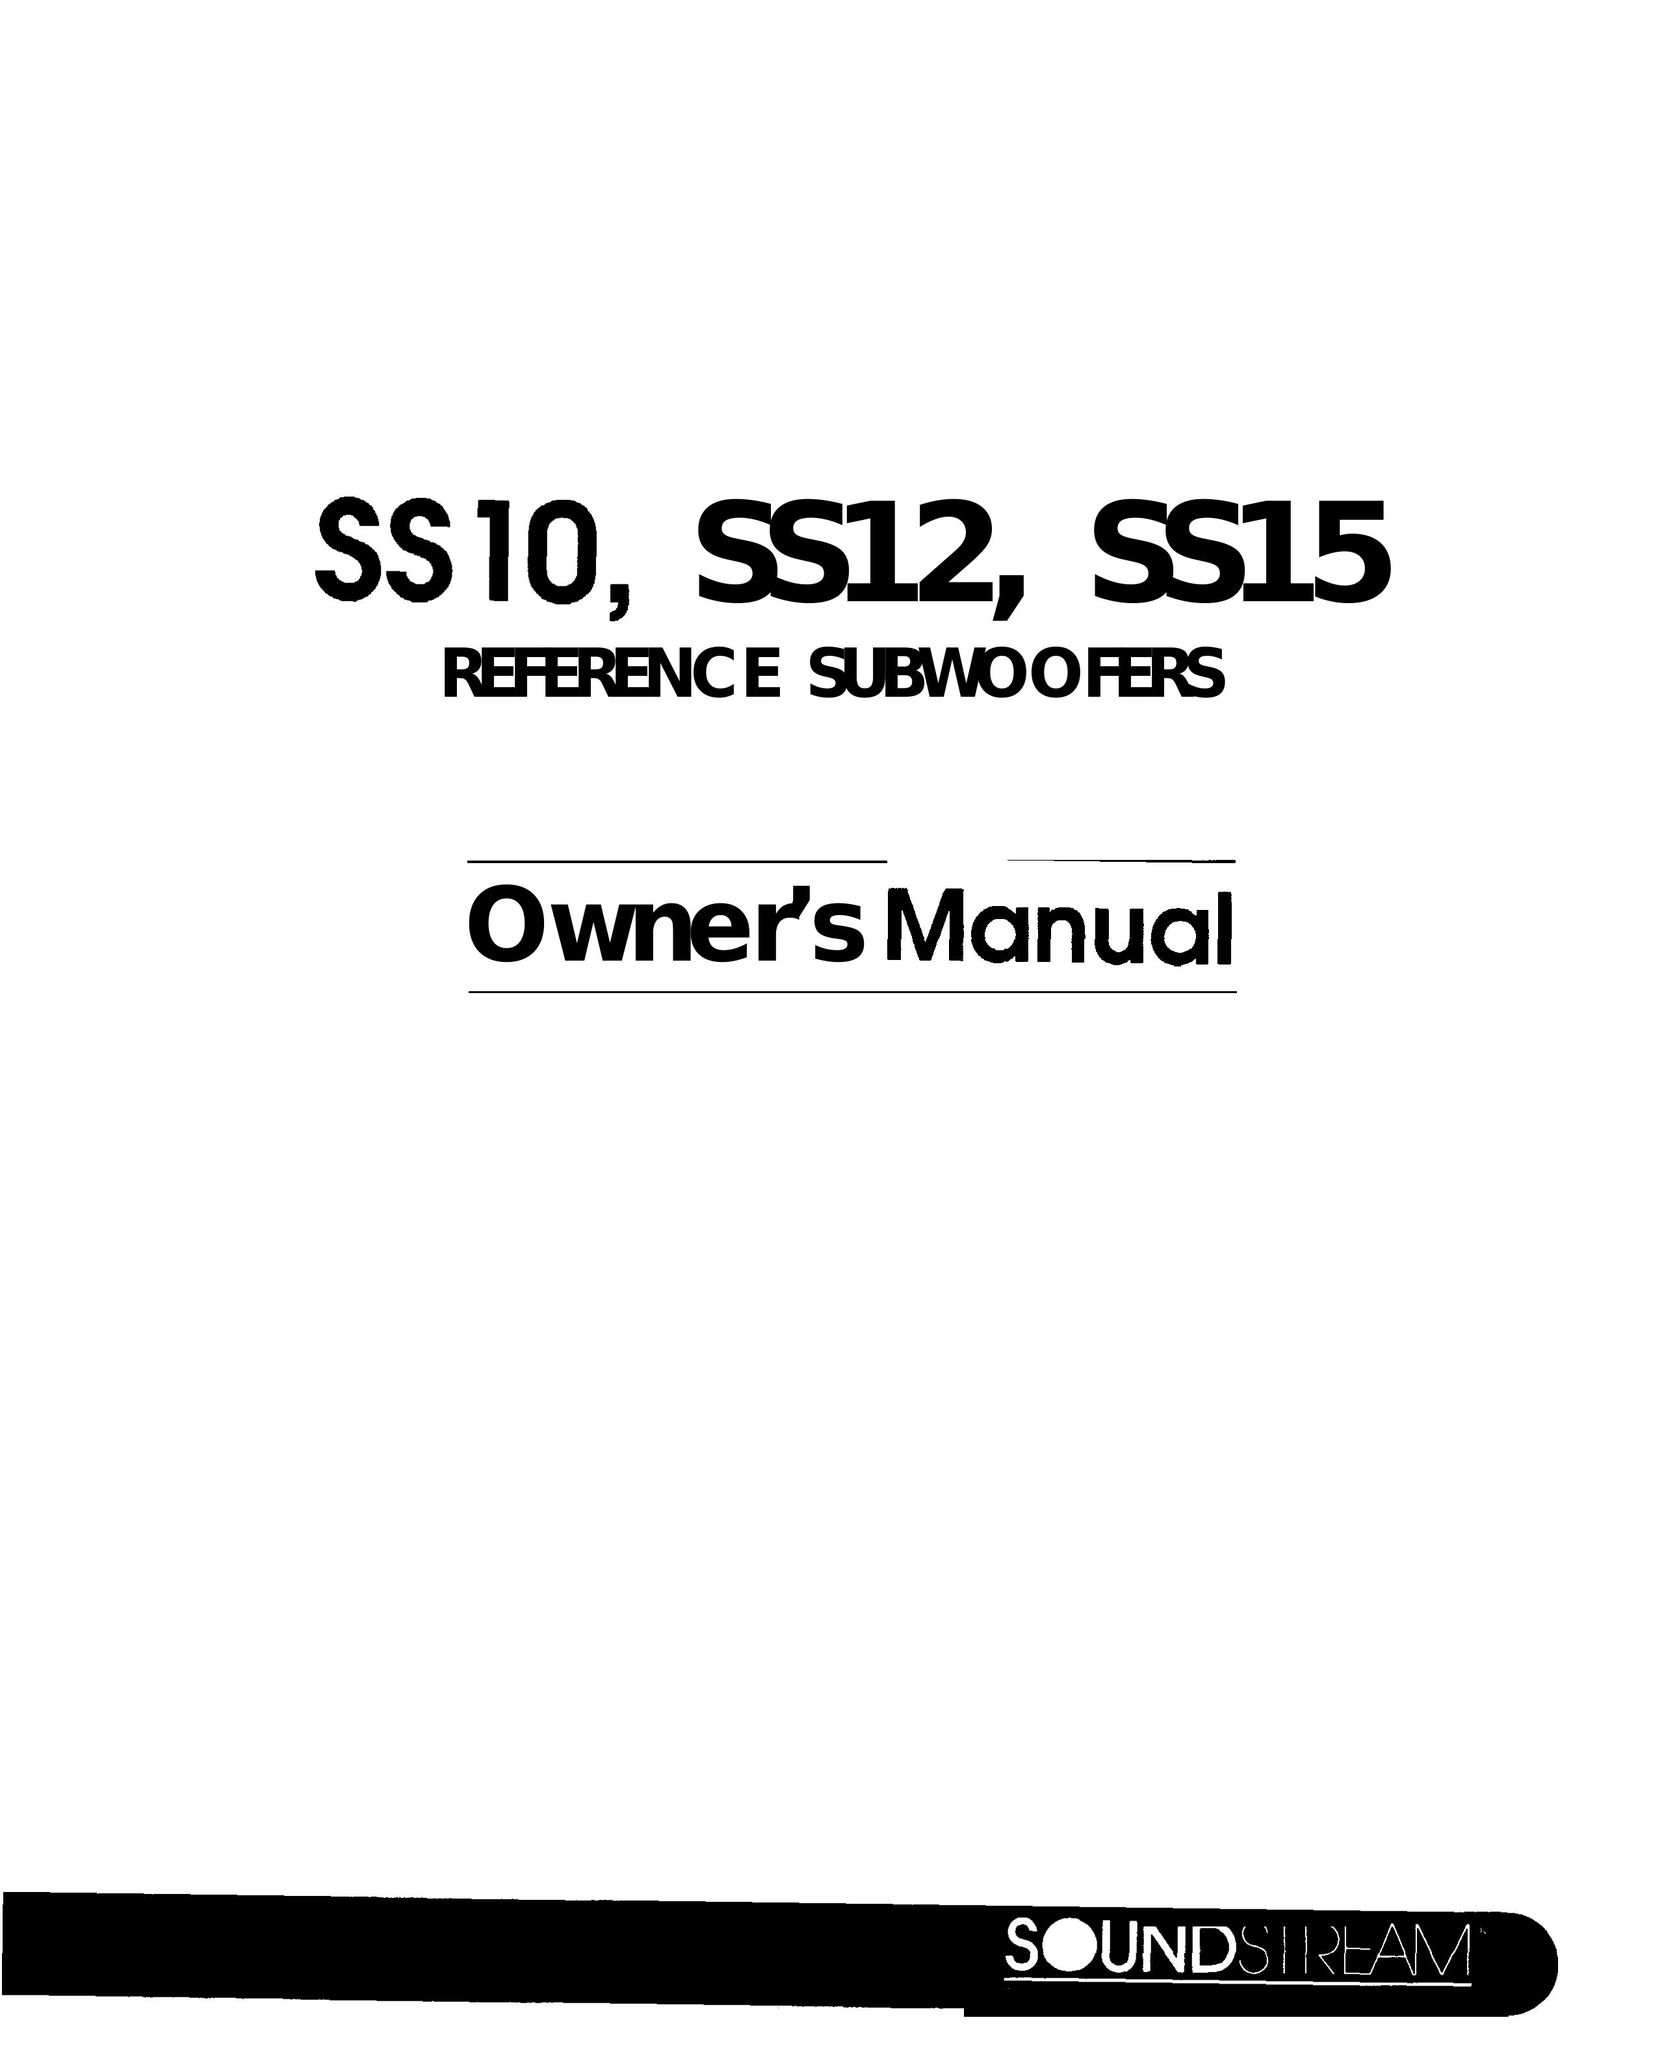 Soundstream Technologies SS15 Speaker User Manual